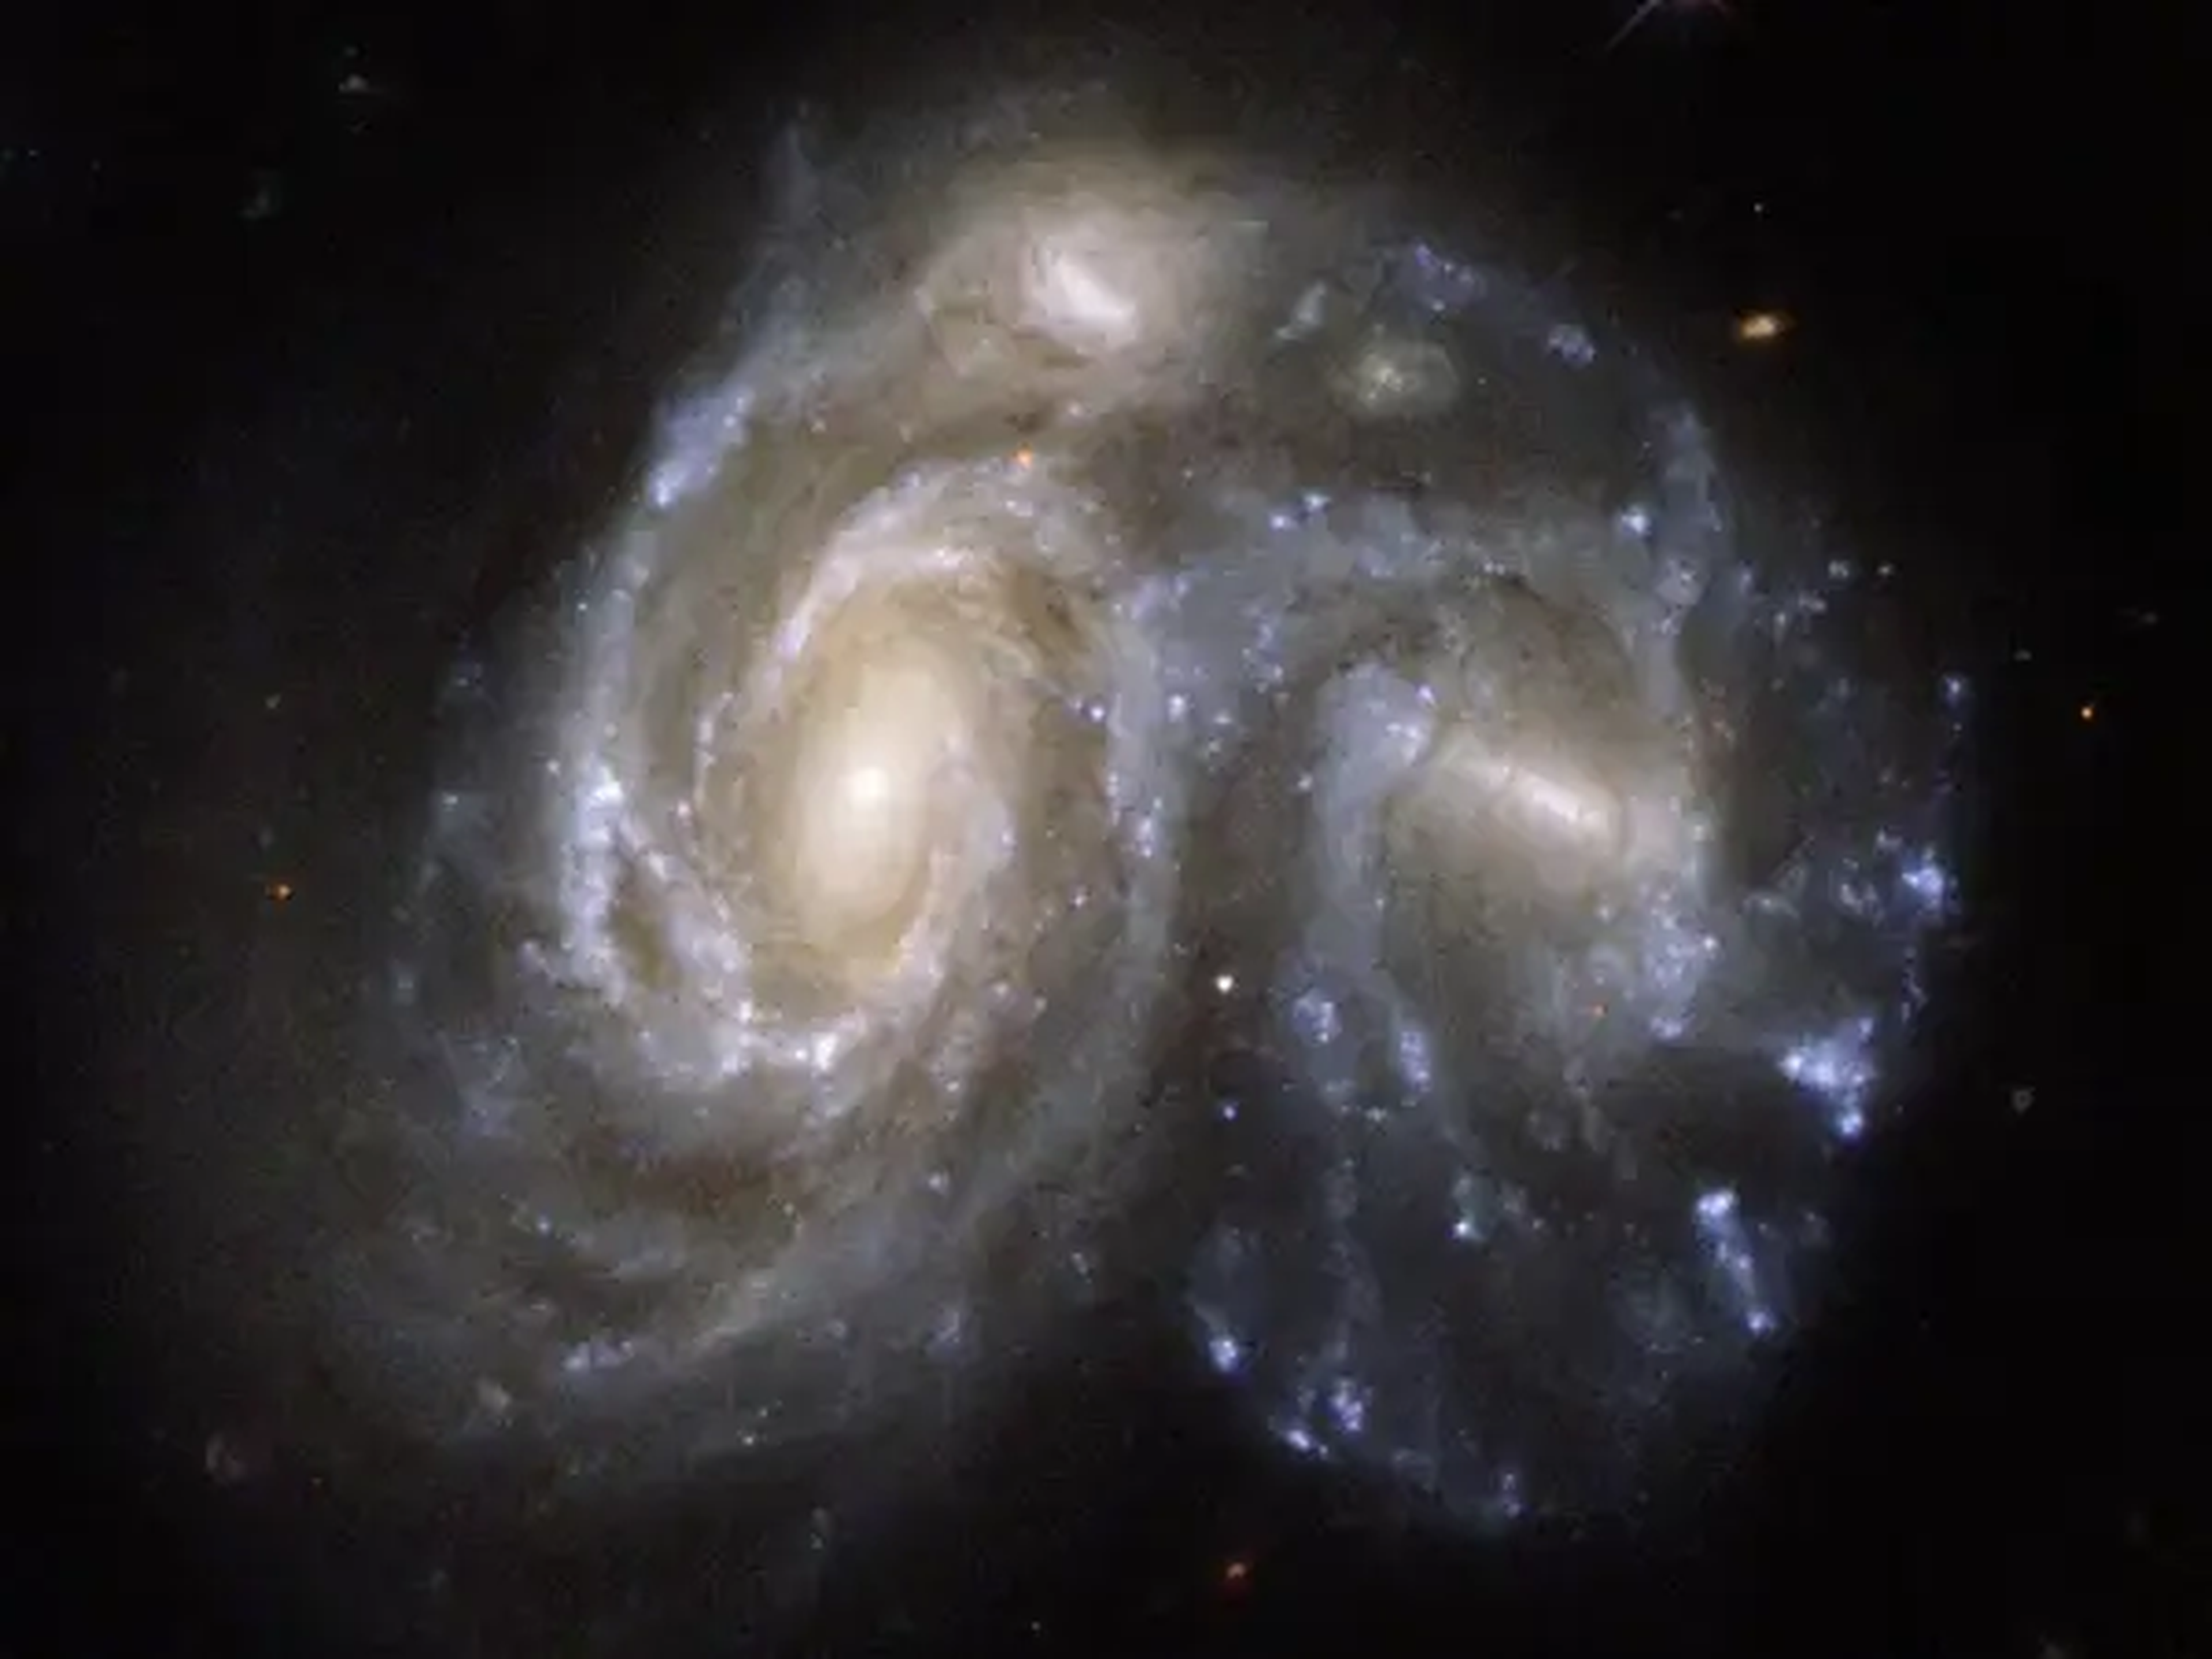 Dos galaxias con forma de espiral colisionando en una imagen captada por el telescopio espacial Hubble.